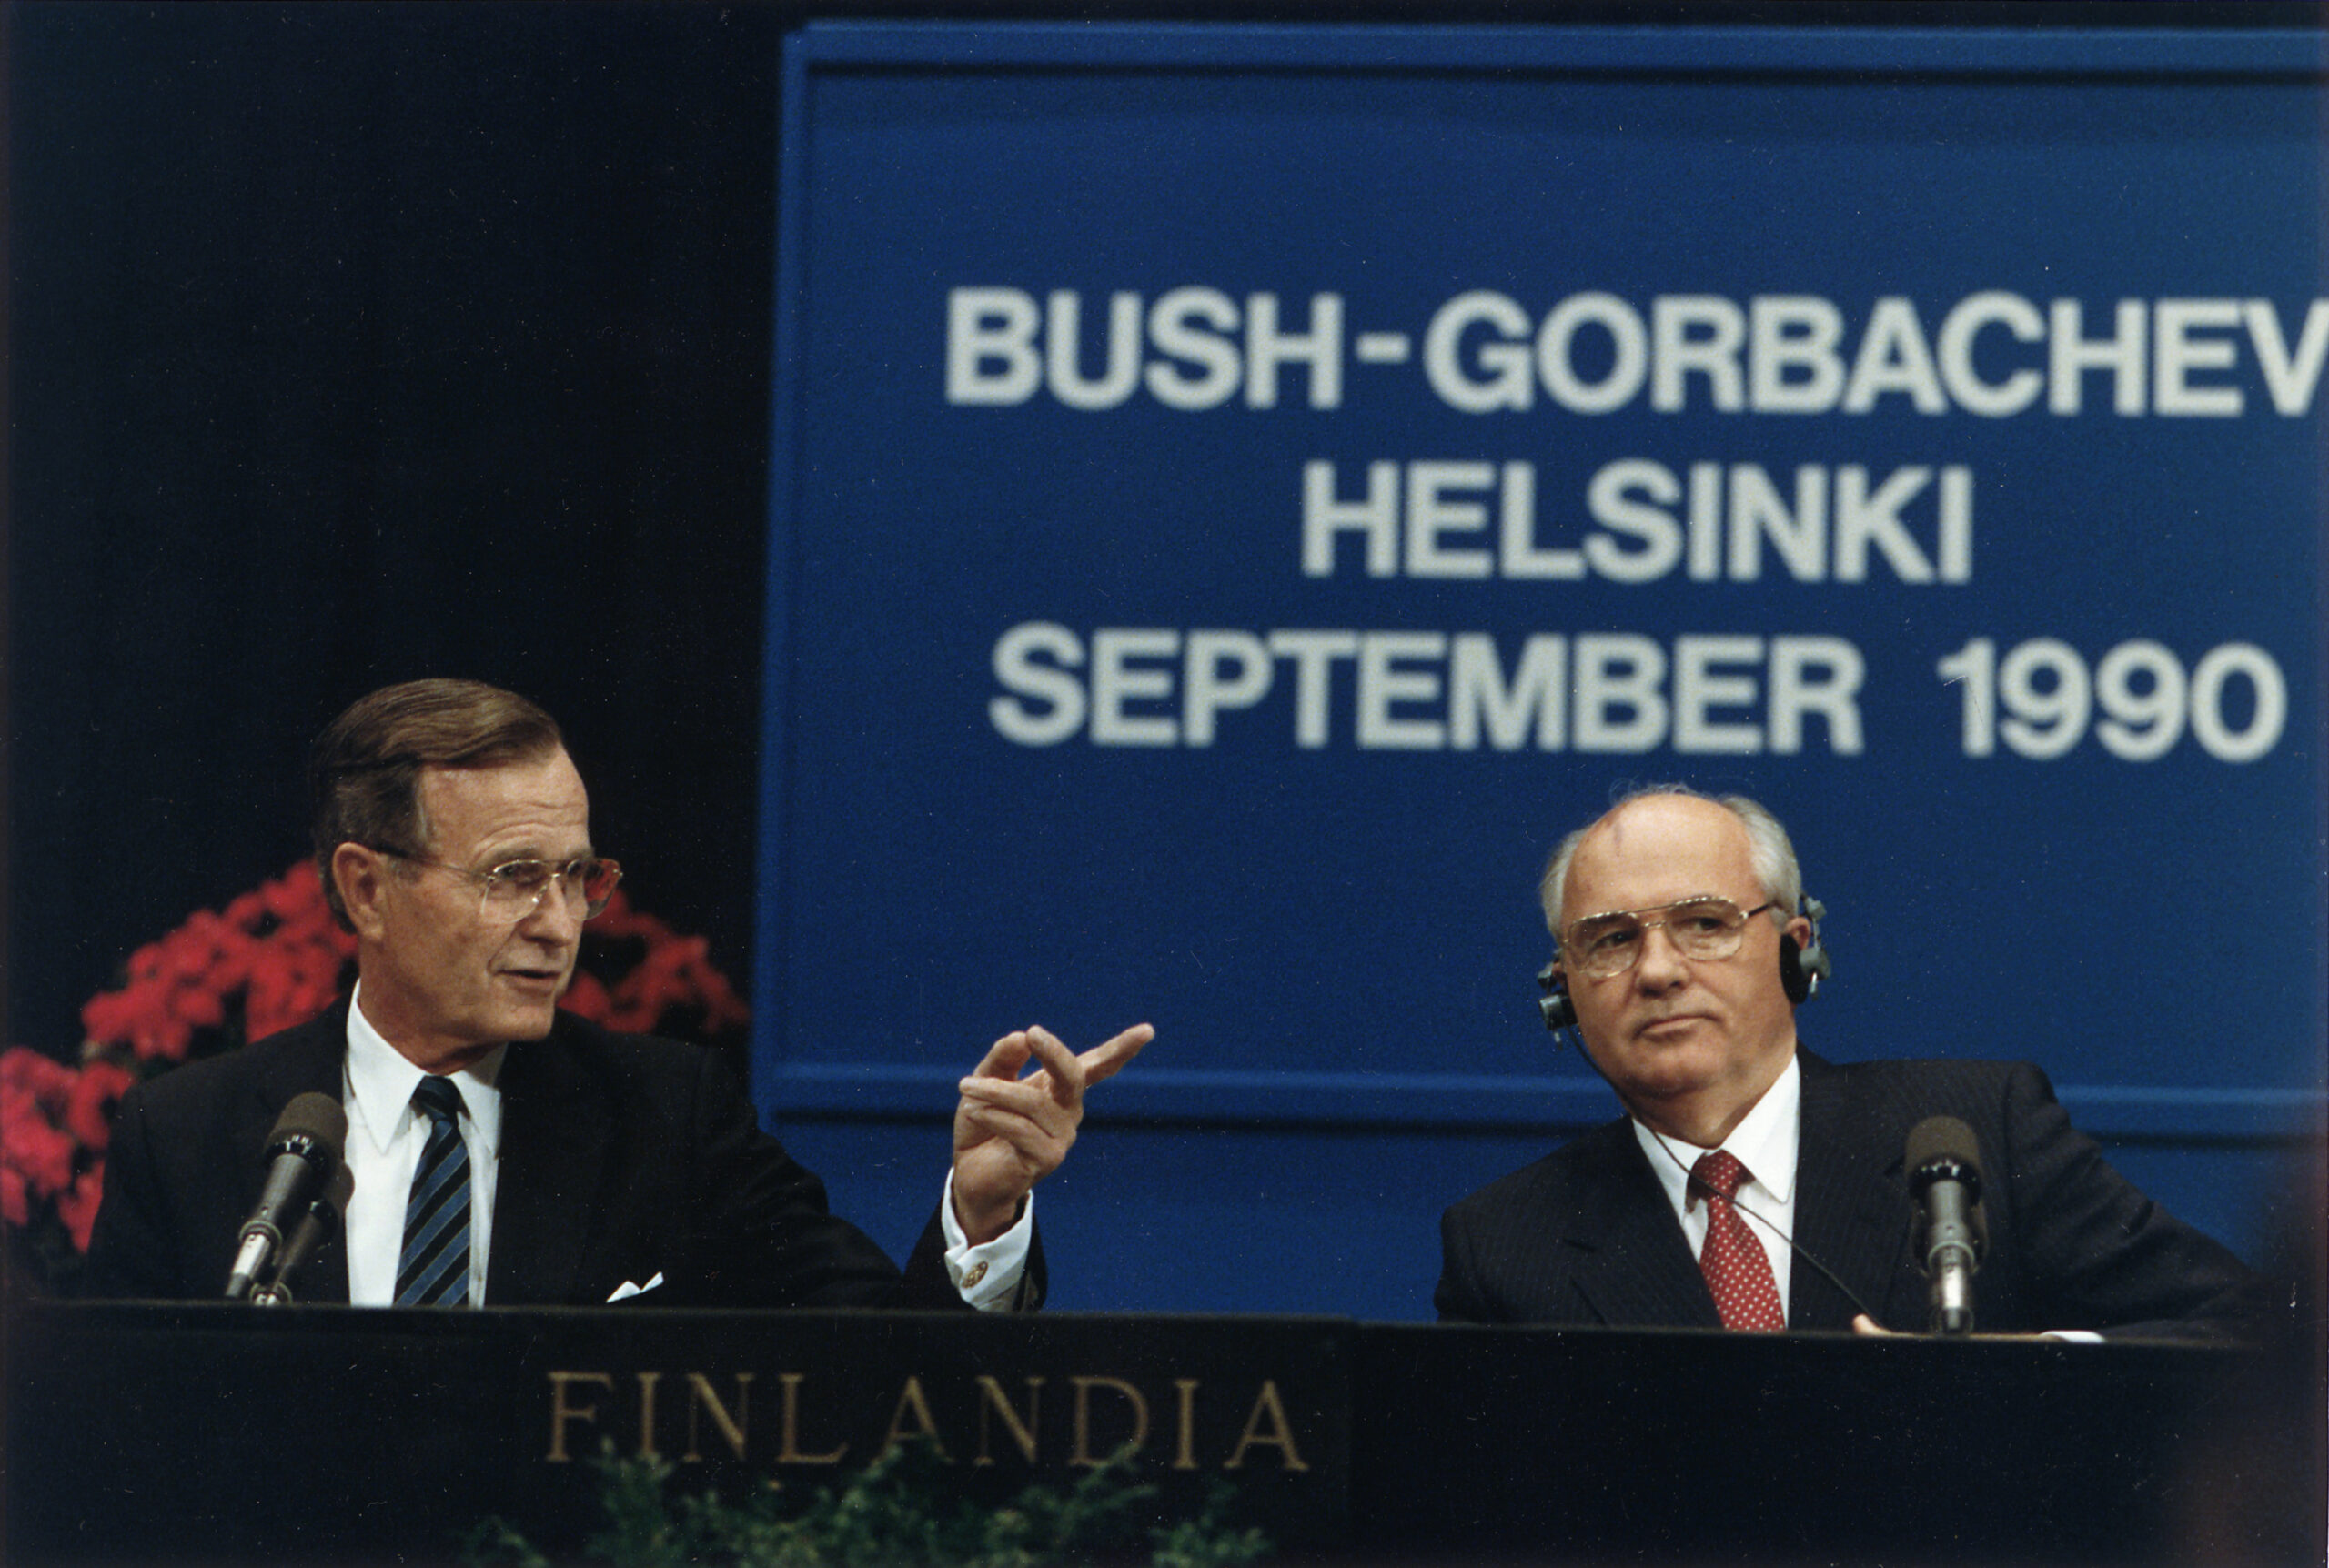 לא השאיר ליצחק שמיר ברירה. ג'ורג' בוש האב במסיבת עיתונאים עם מיכאיל גורבצ'וב ב-1990 (צילום: סוזאן בידל / ספריית הנשיא בוש)